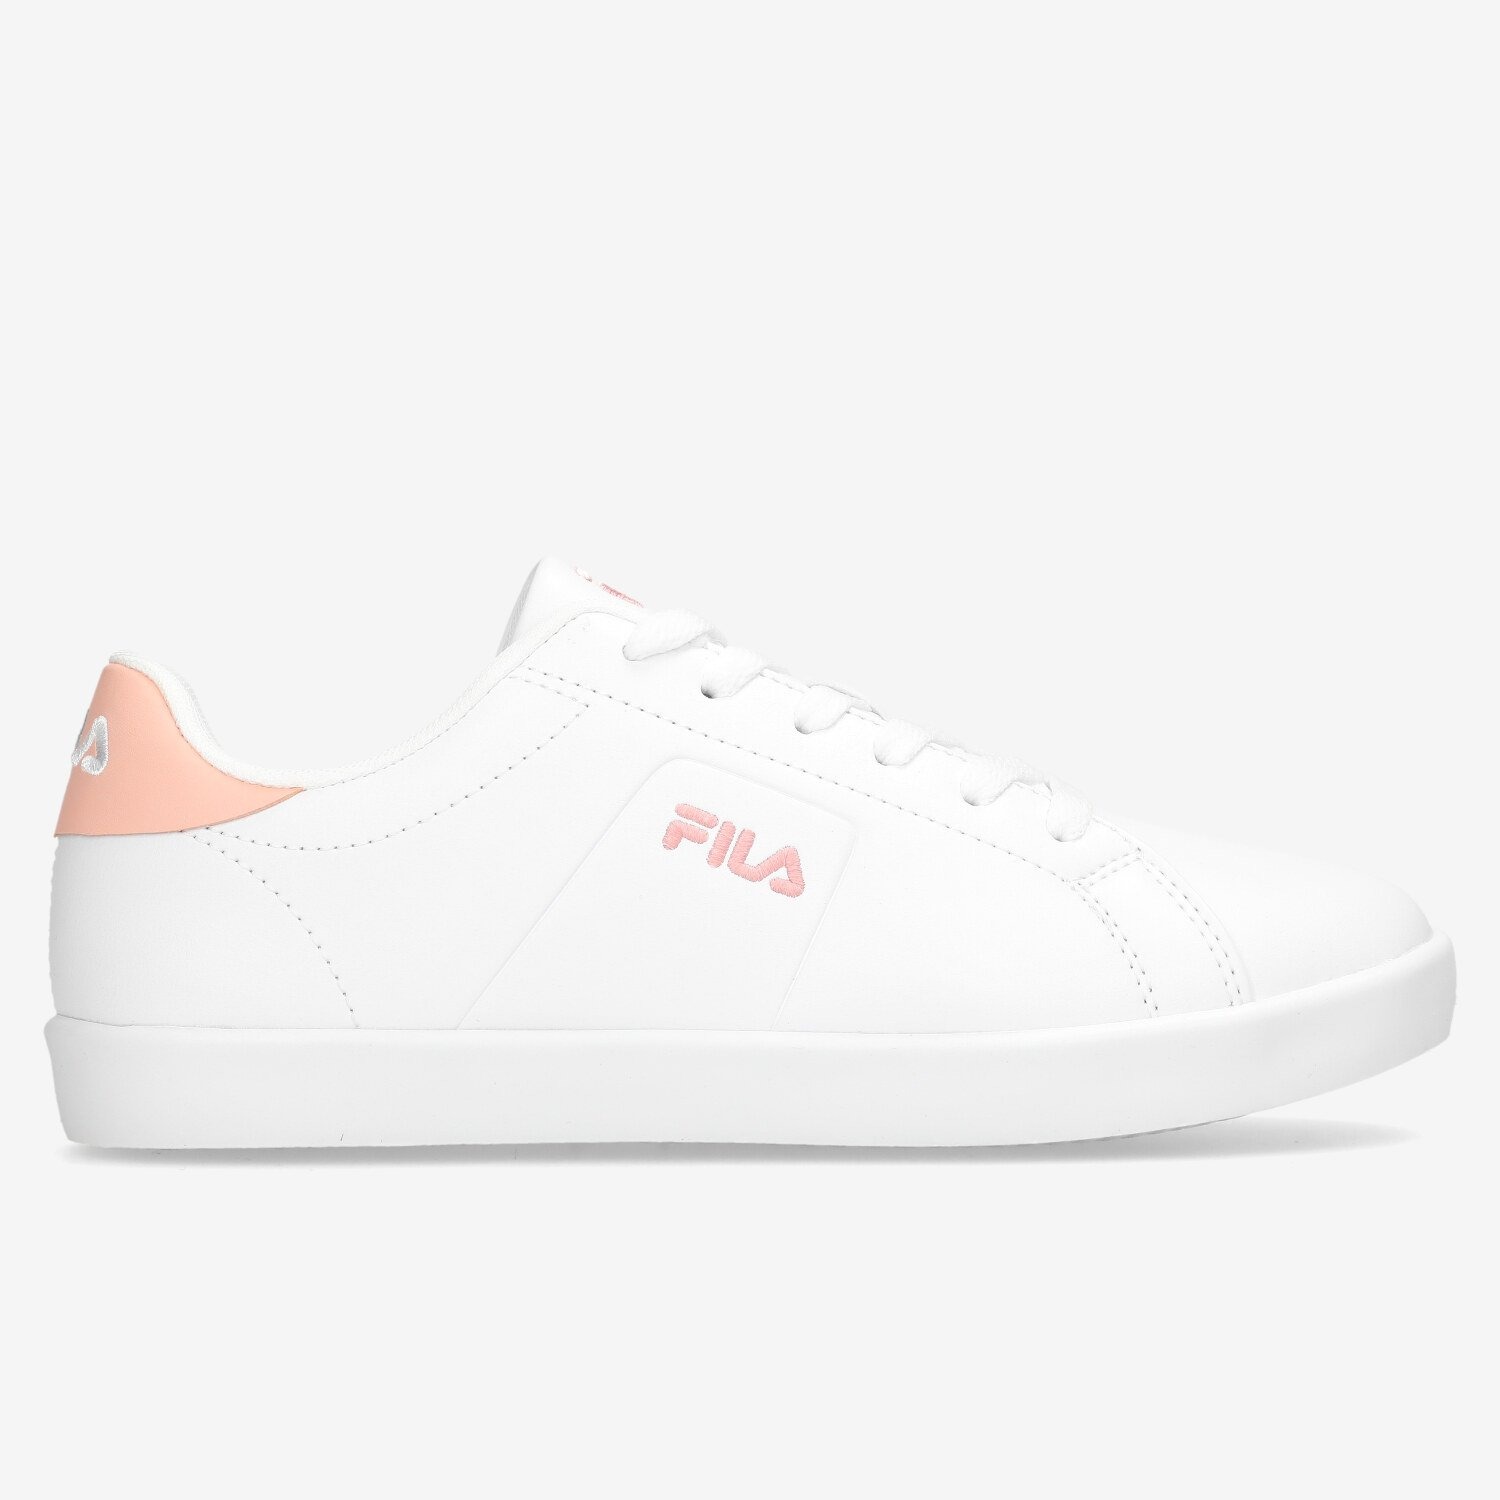 Fila Fila panache sneakers wit/roze dames dames